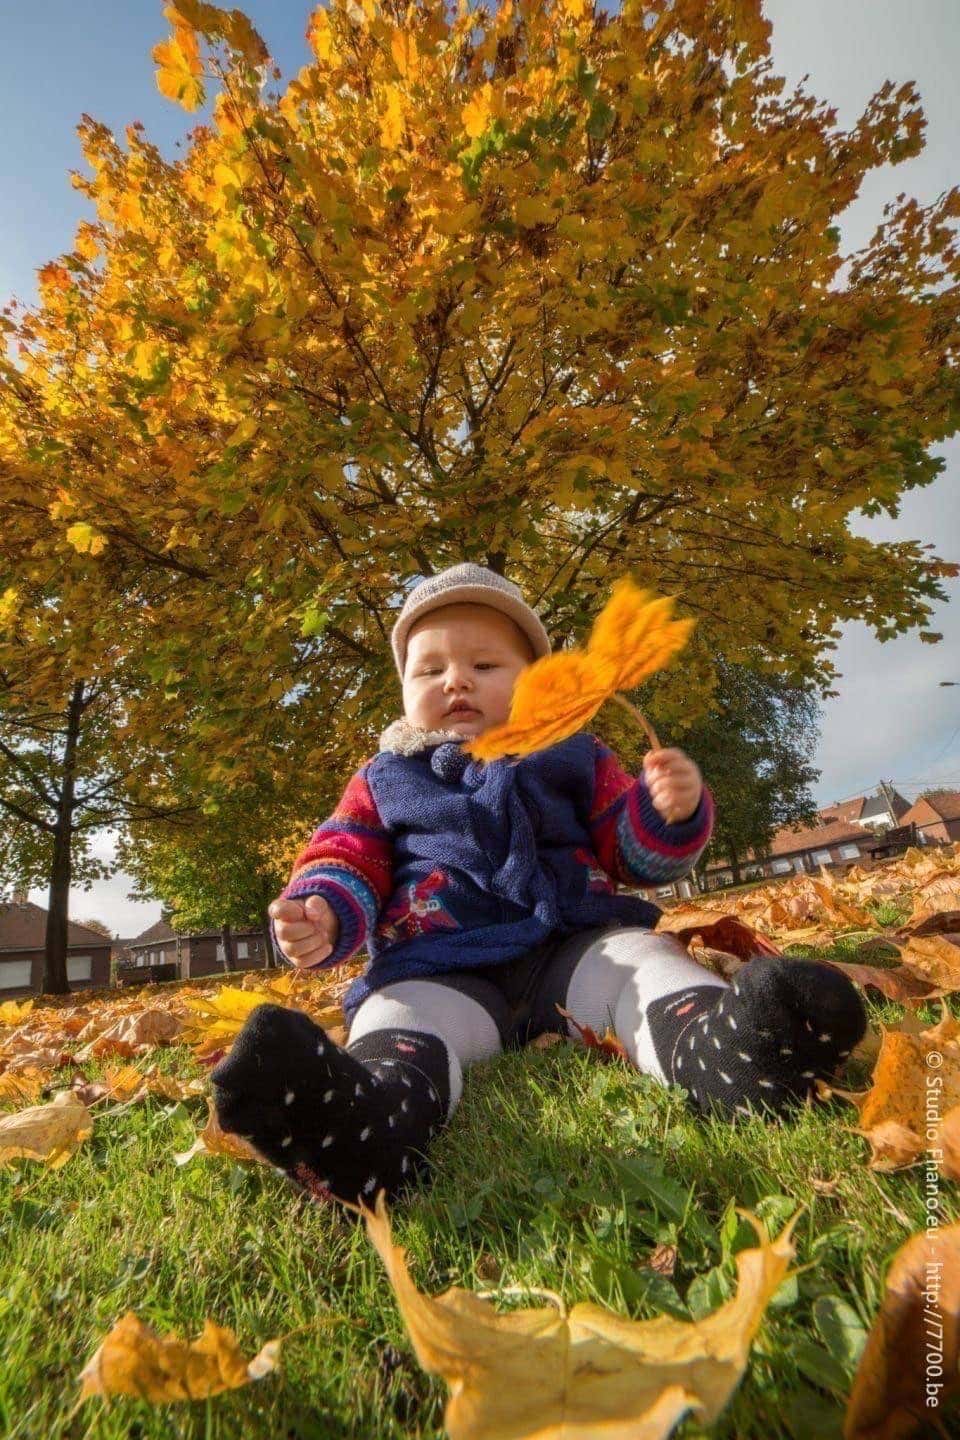 séance photo en extérieur aux couleurs de l'automne avec le Studio Fhano.eu https://www.7700.be